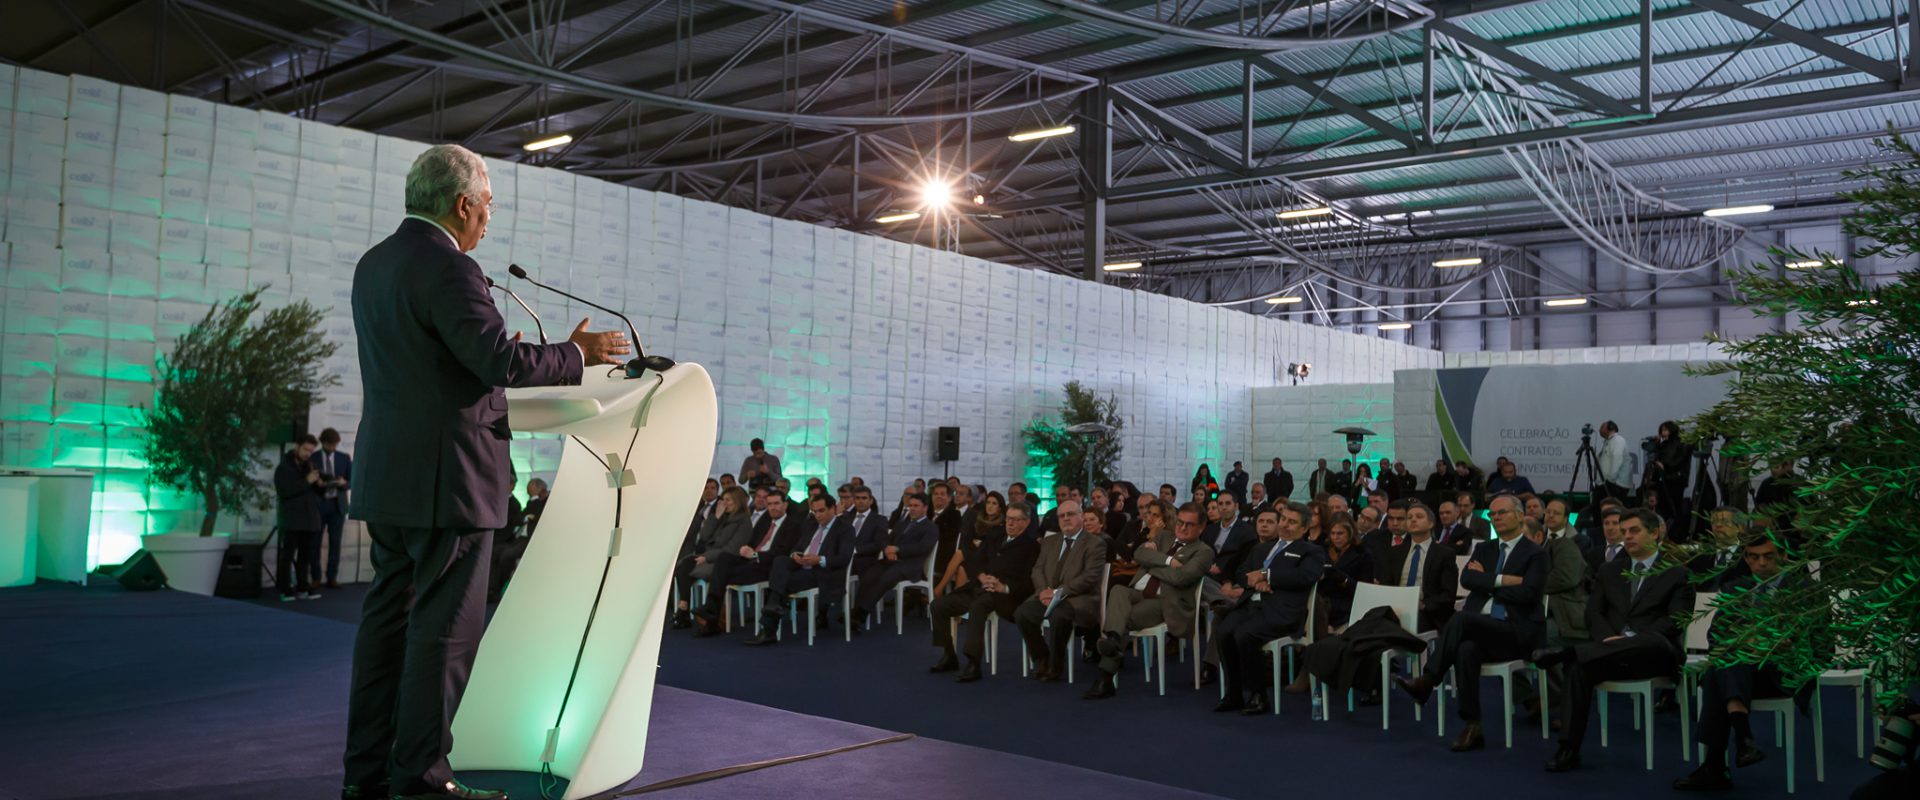 Primeiro-ministro, António Costa, discursa na Celbi